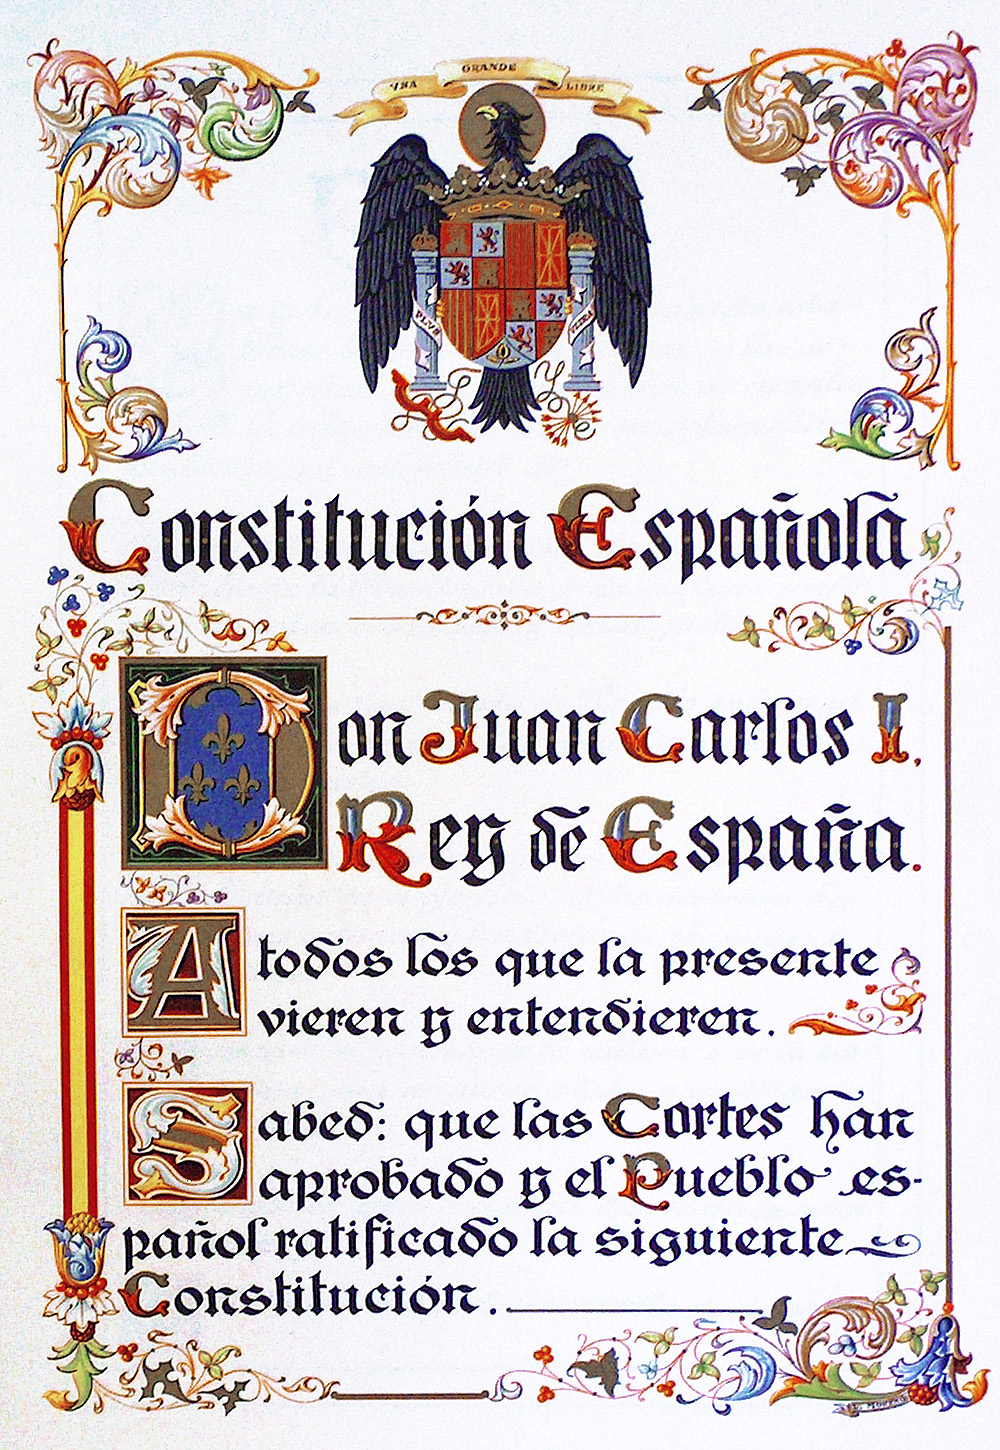 Constitucion-espanola.jpg